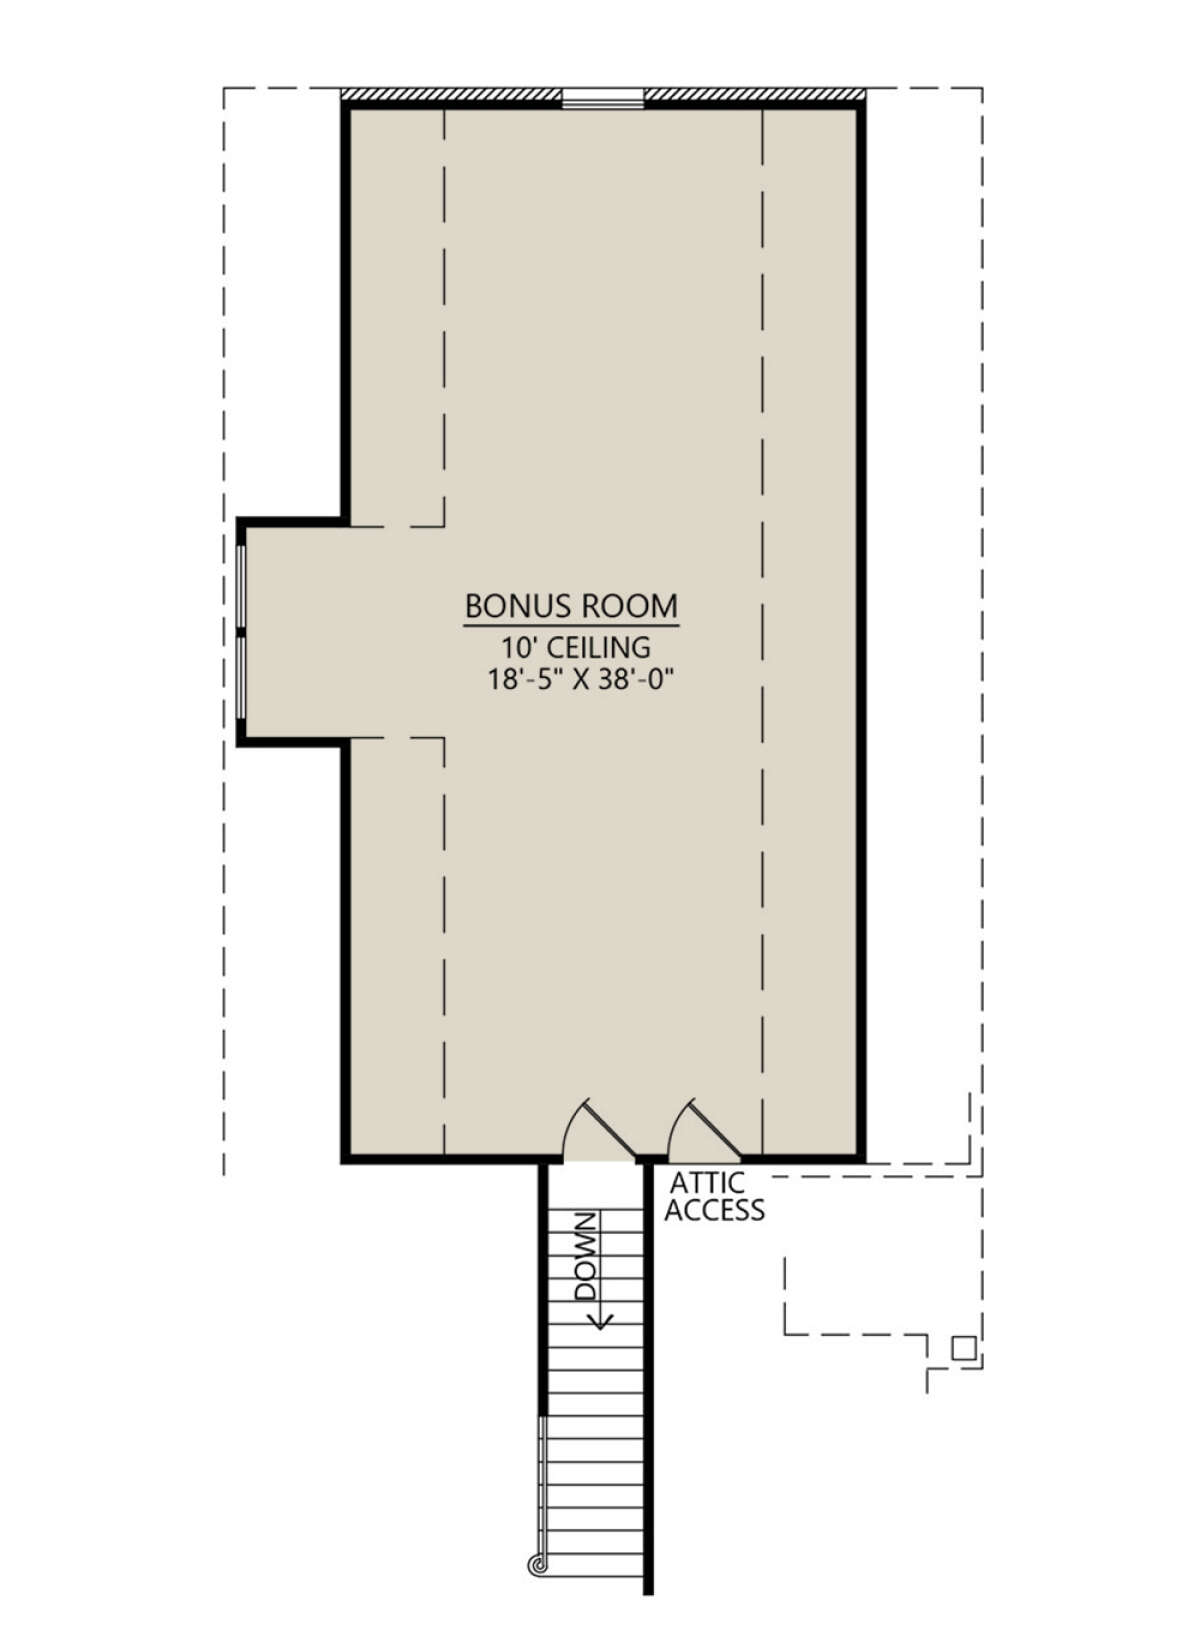 Bonus Room for House Plan #4534-00066